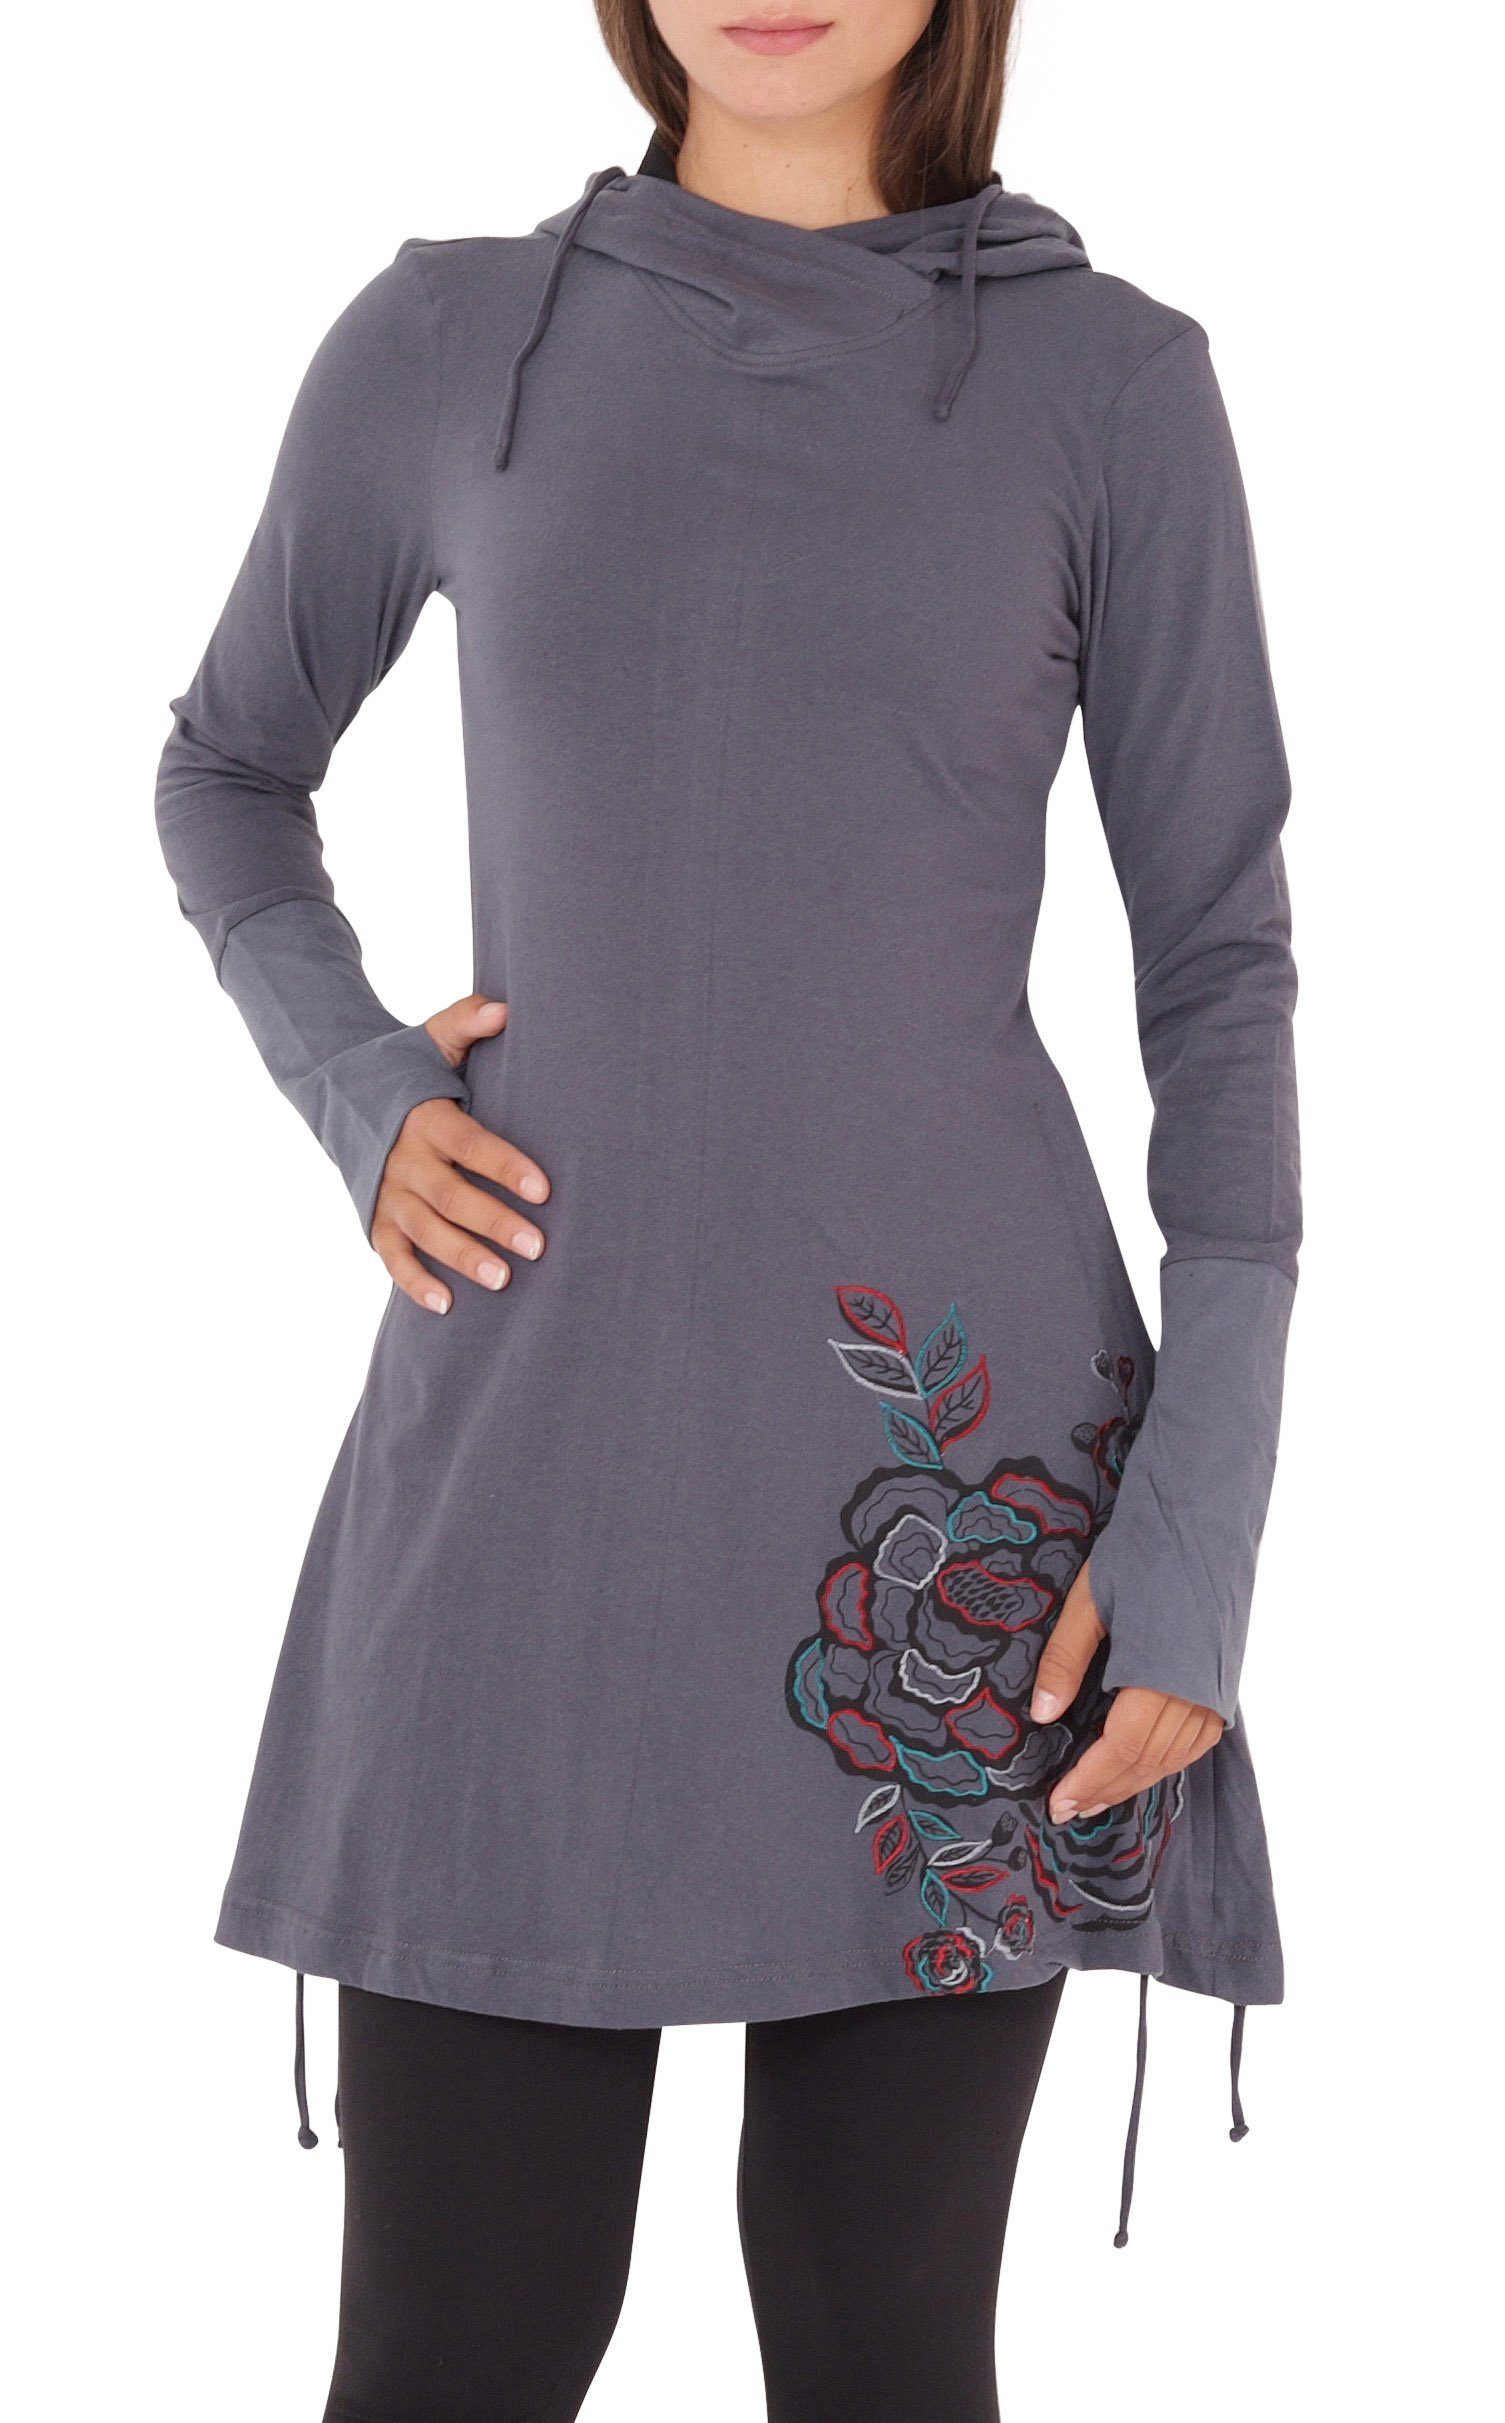 PUREWONDER A-Linien-Kleid Kapuzenkleid mit Blumen-Print dr132 Jersey Grau